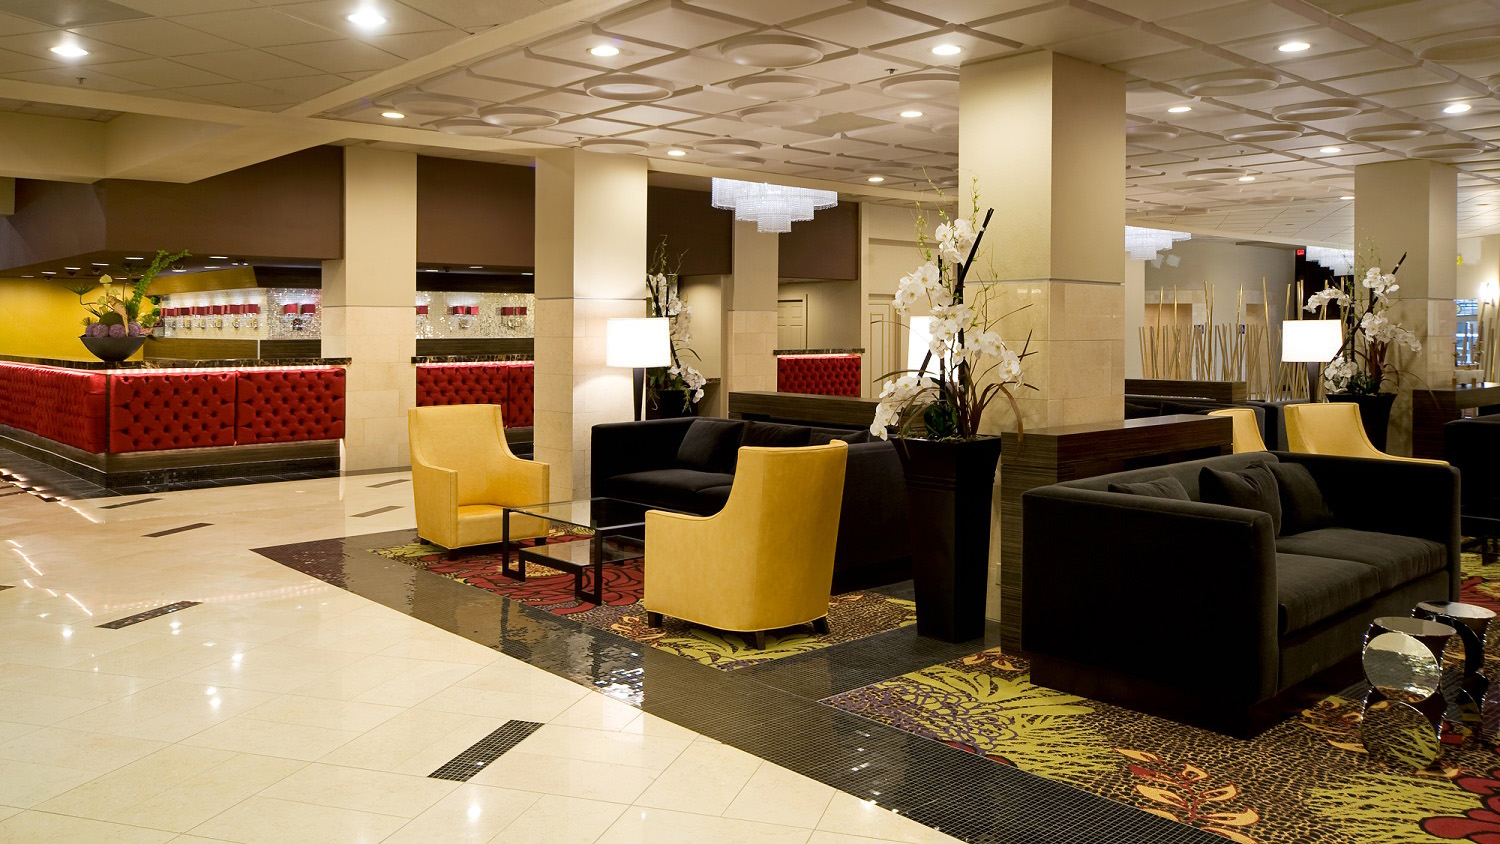 Plaza Hotel and Casino - Lobby